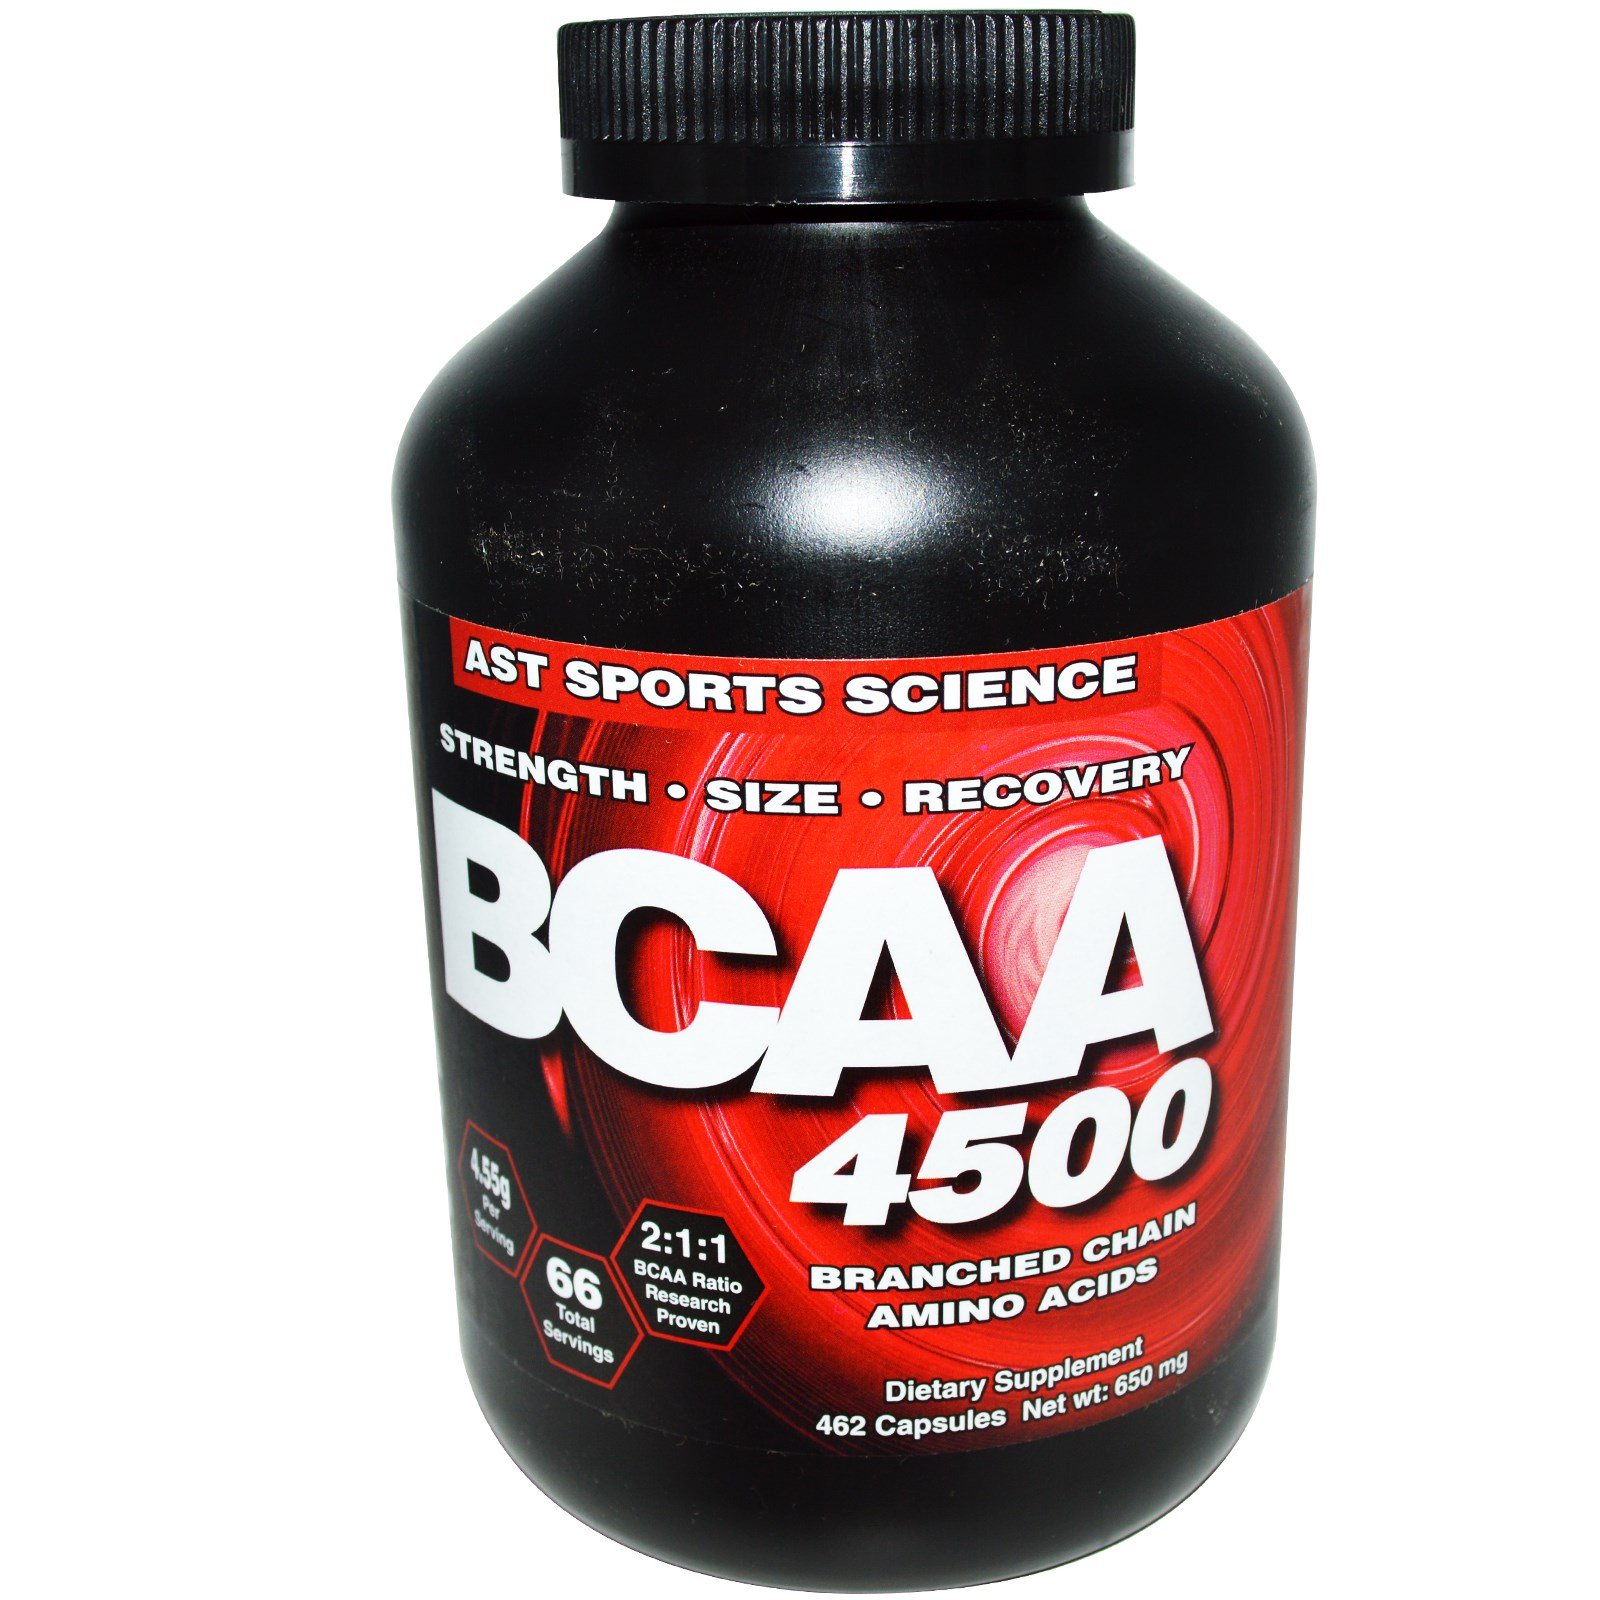 BCAA 4500, 462 pcs, AST. BCAA. Weight Loss स्वास्थ्य लाभ Anti-catabolic properties Lean muscle mass 